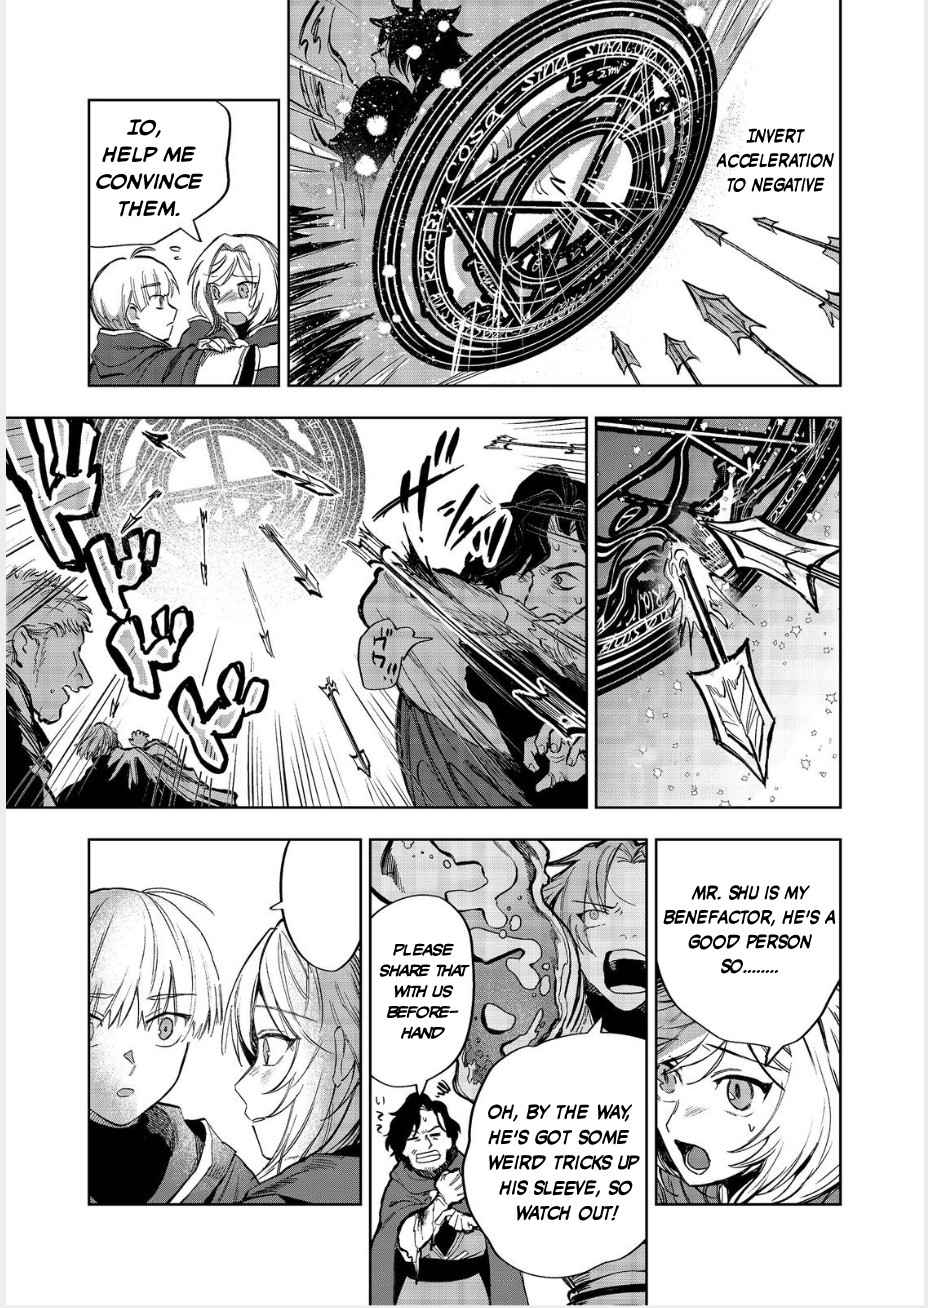 Meiou-sama ga Tooru no desu yo! Chapter 11-eng-li - Page 17